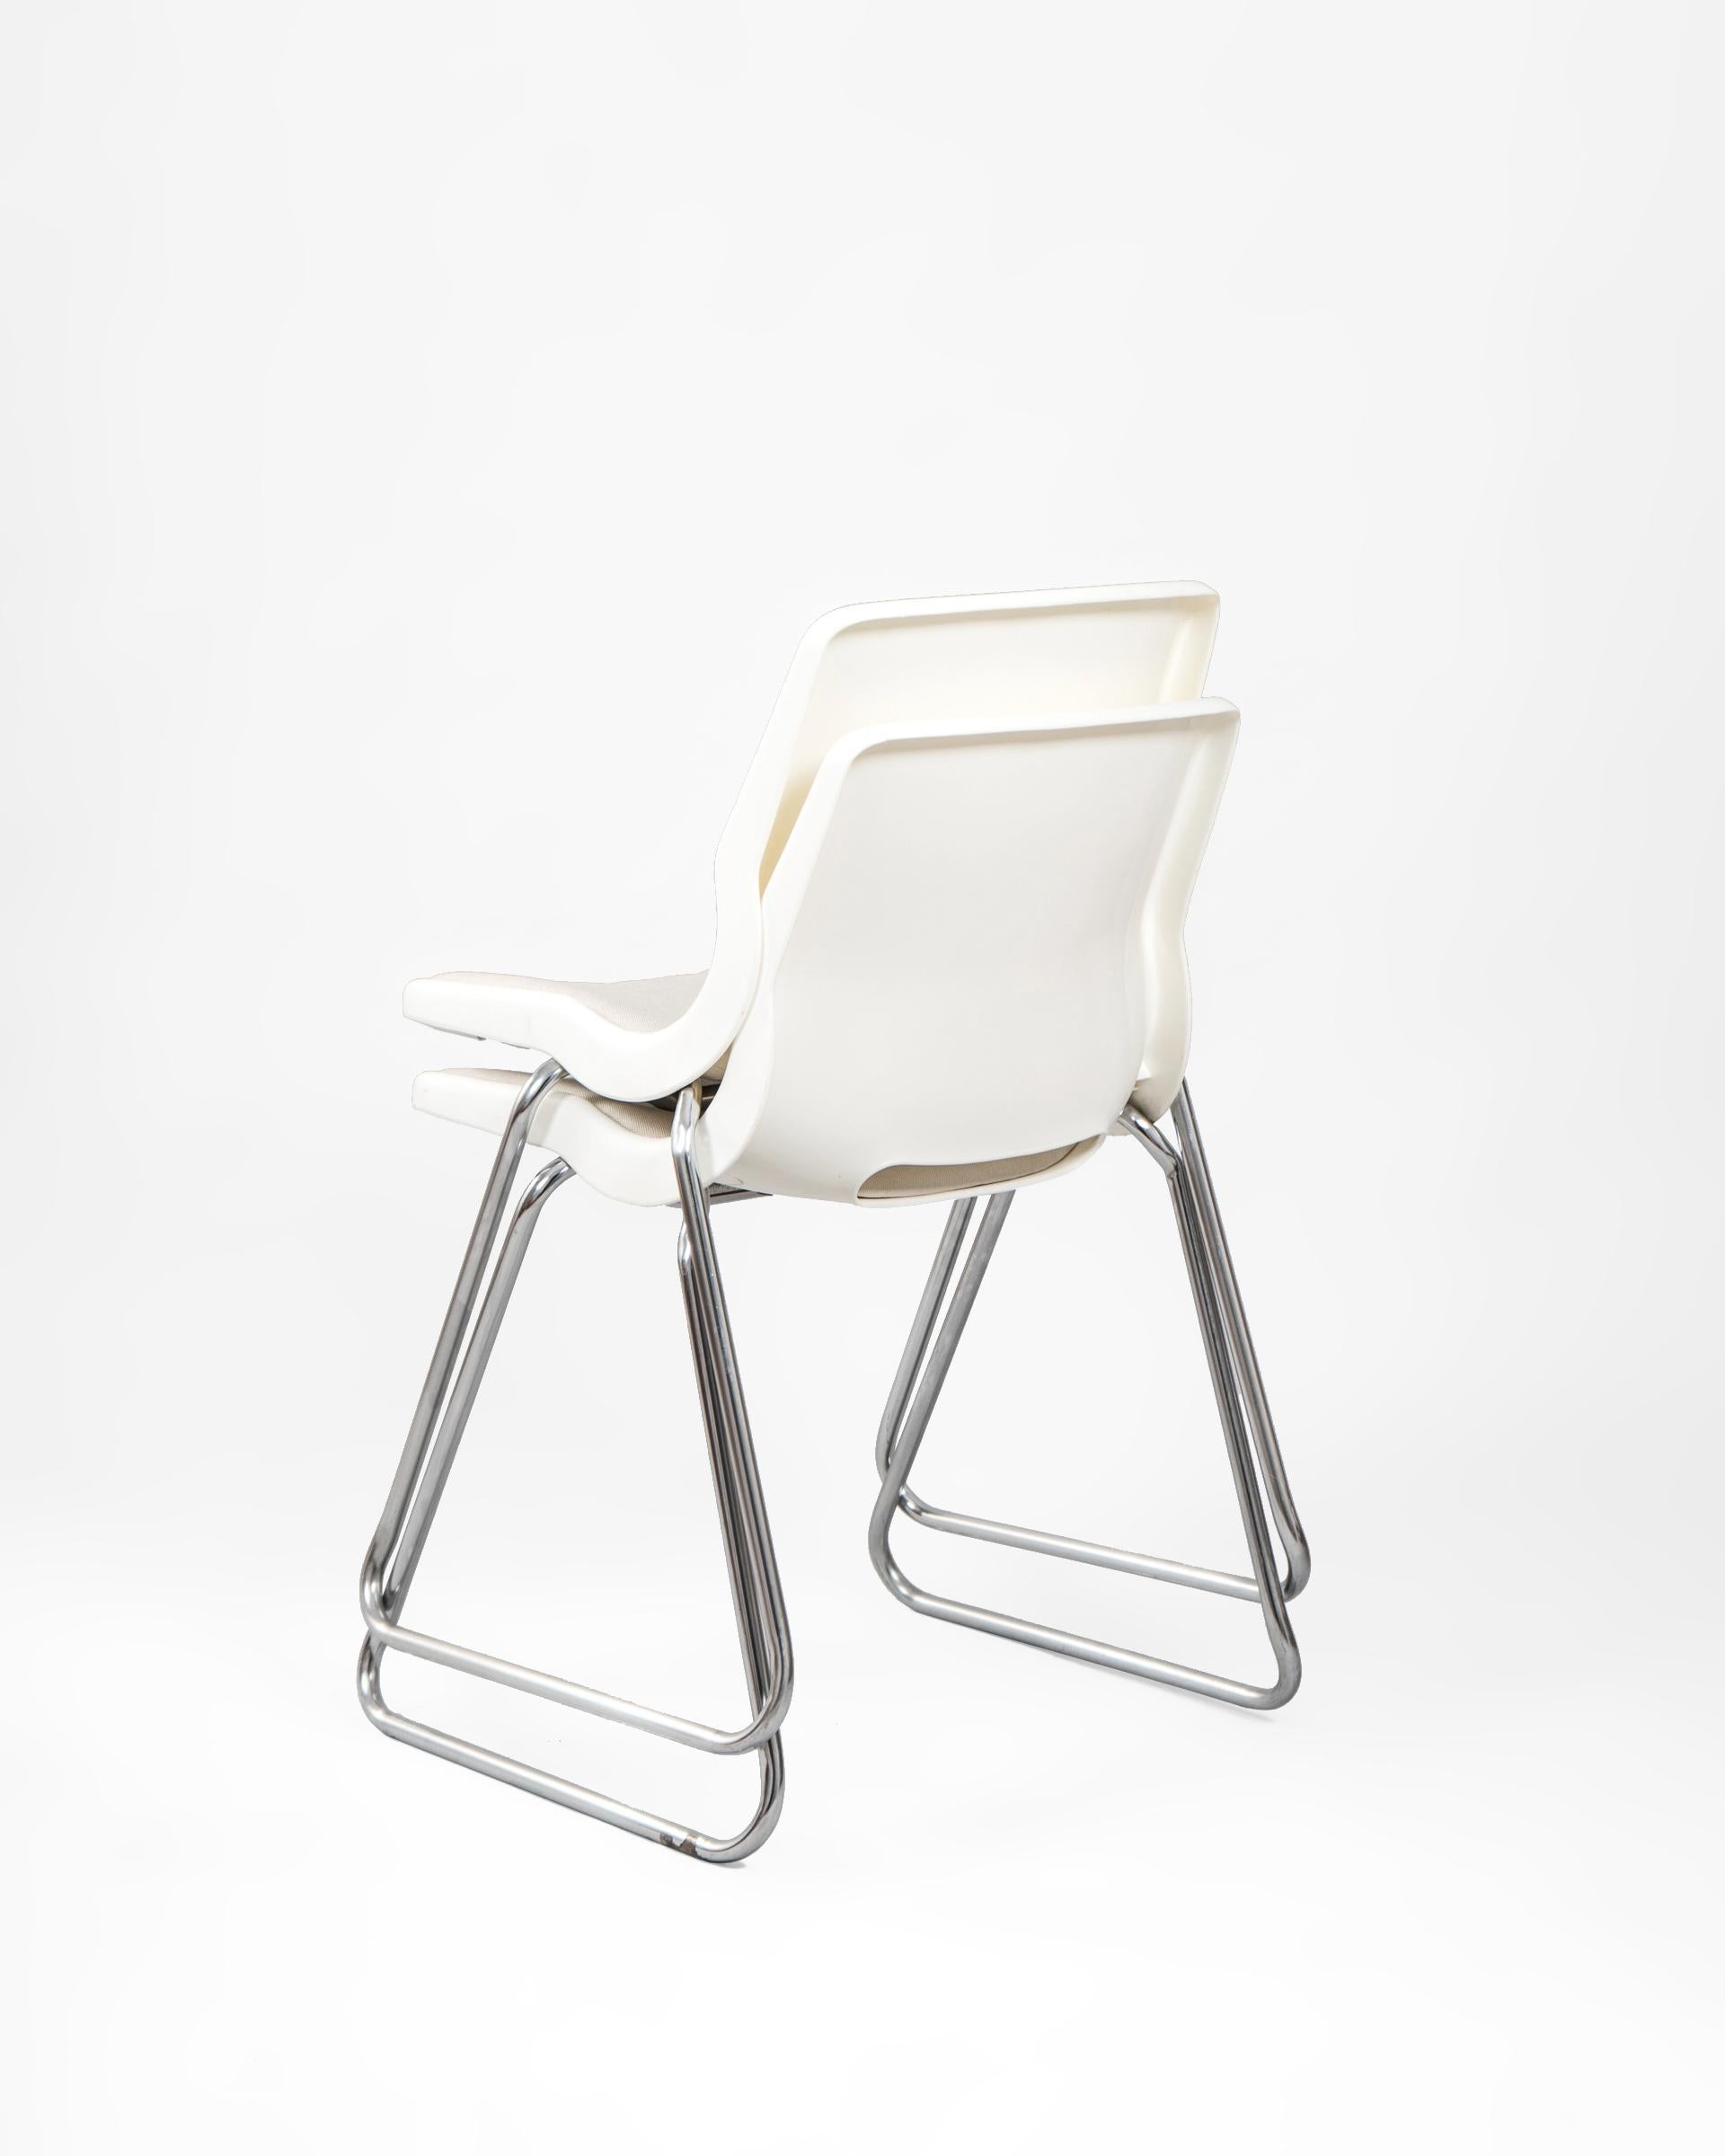 Pareja de sillas apilables diseñadas por Svante Schöblom para la firma sueca Overman en la década de los 1960's. Bien qu'édité en différentes couleurs, le design en blanco s'adapte à tous les espaces et nous offre une combinaison parfaite entre la